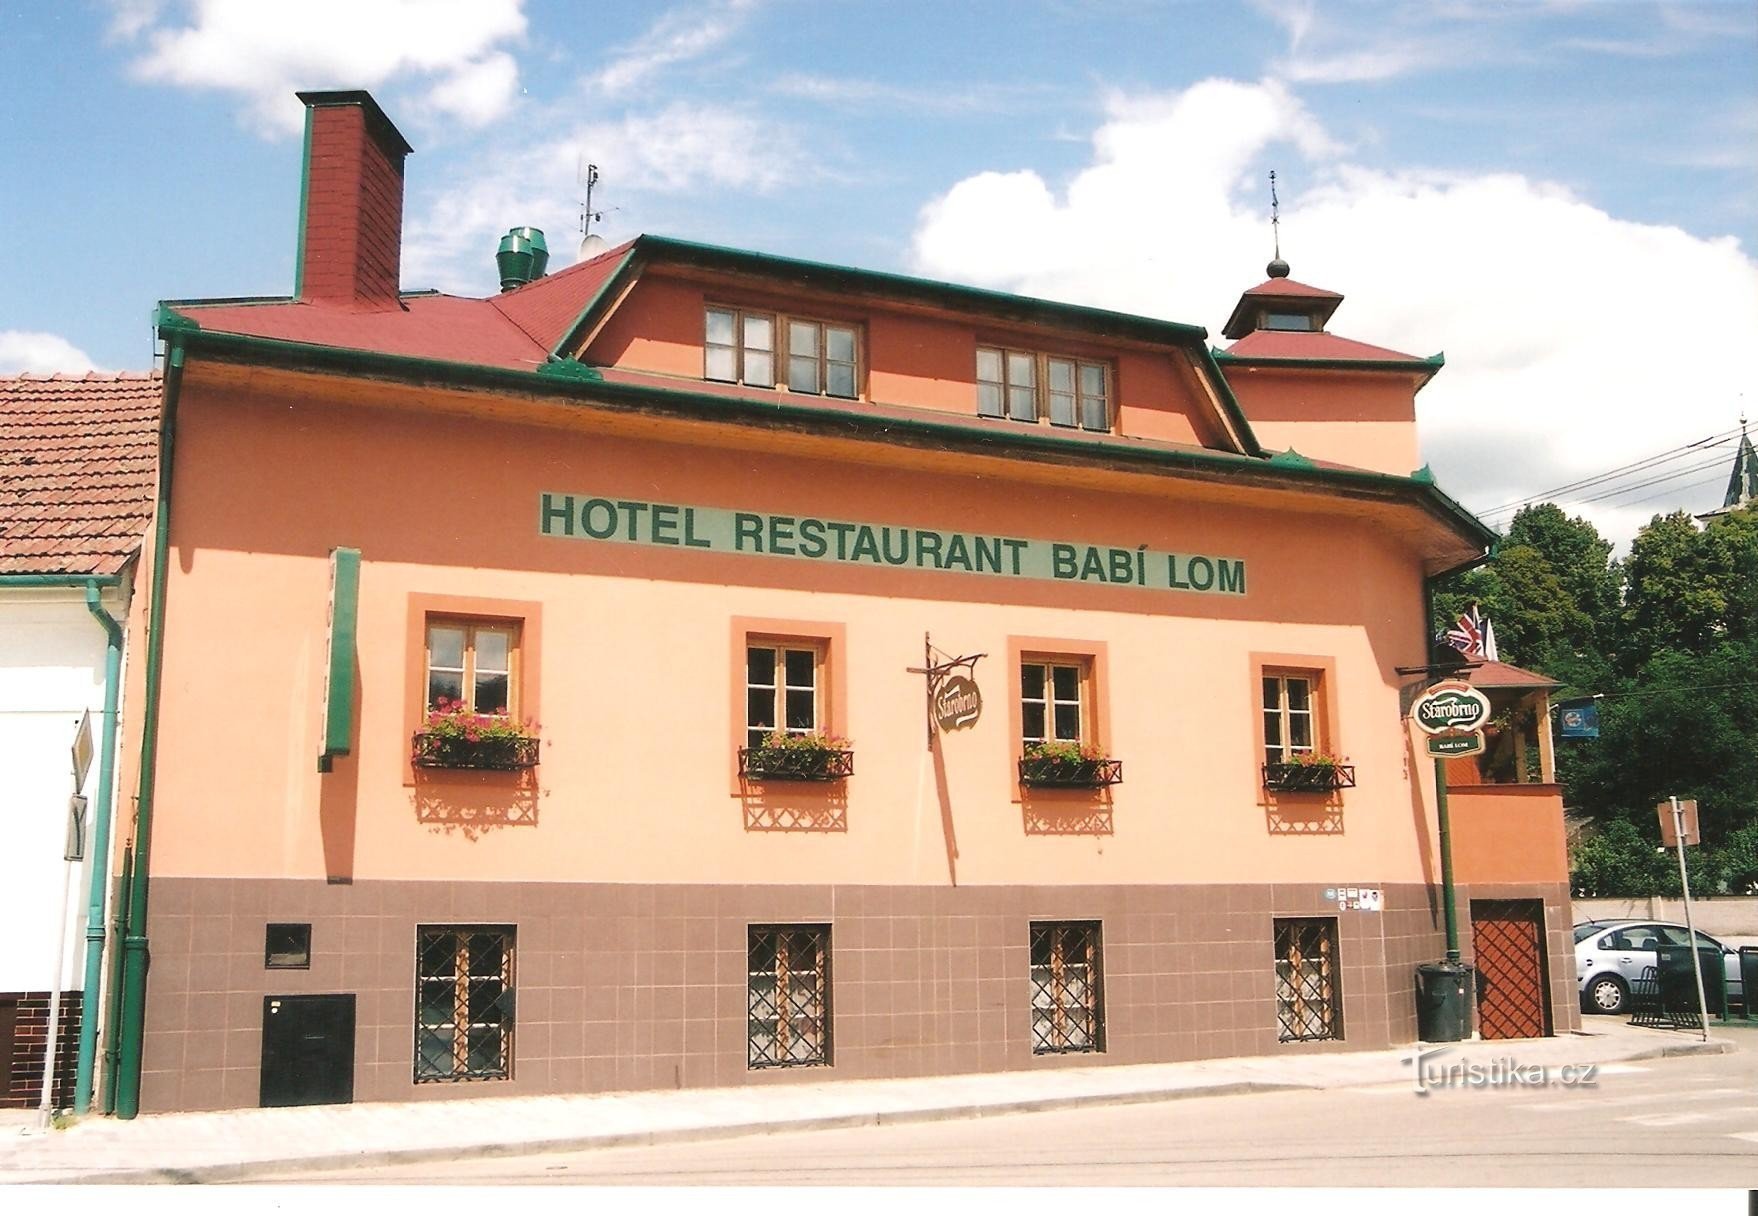 Lelekovice - Babí lom hotel